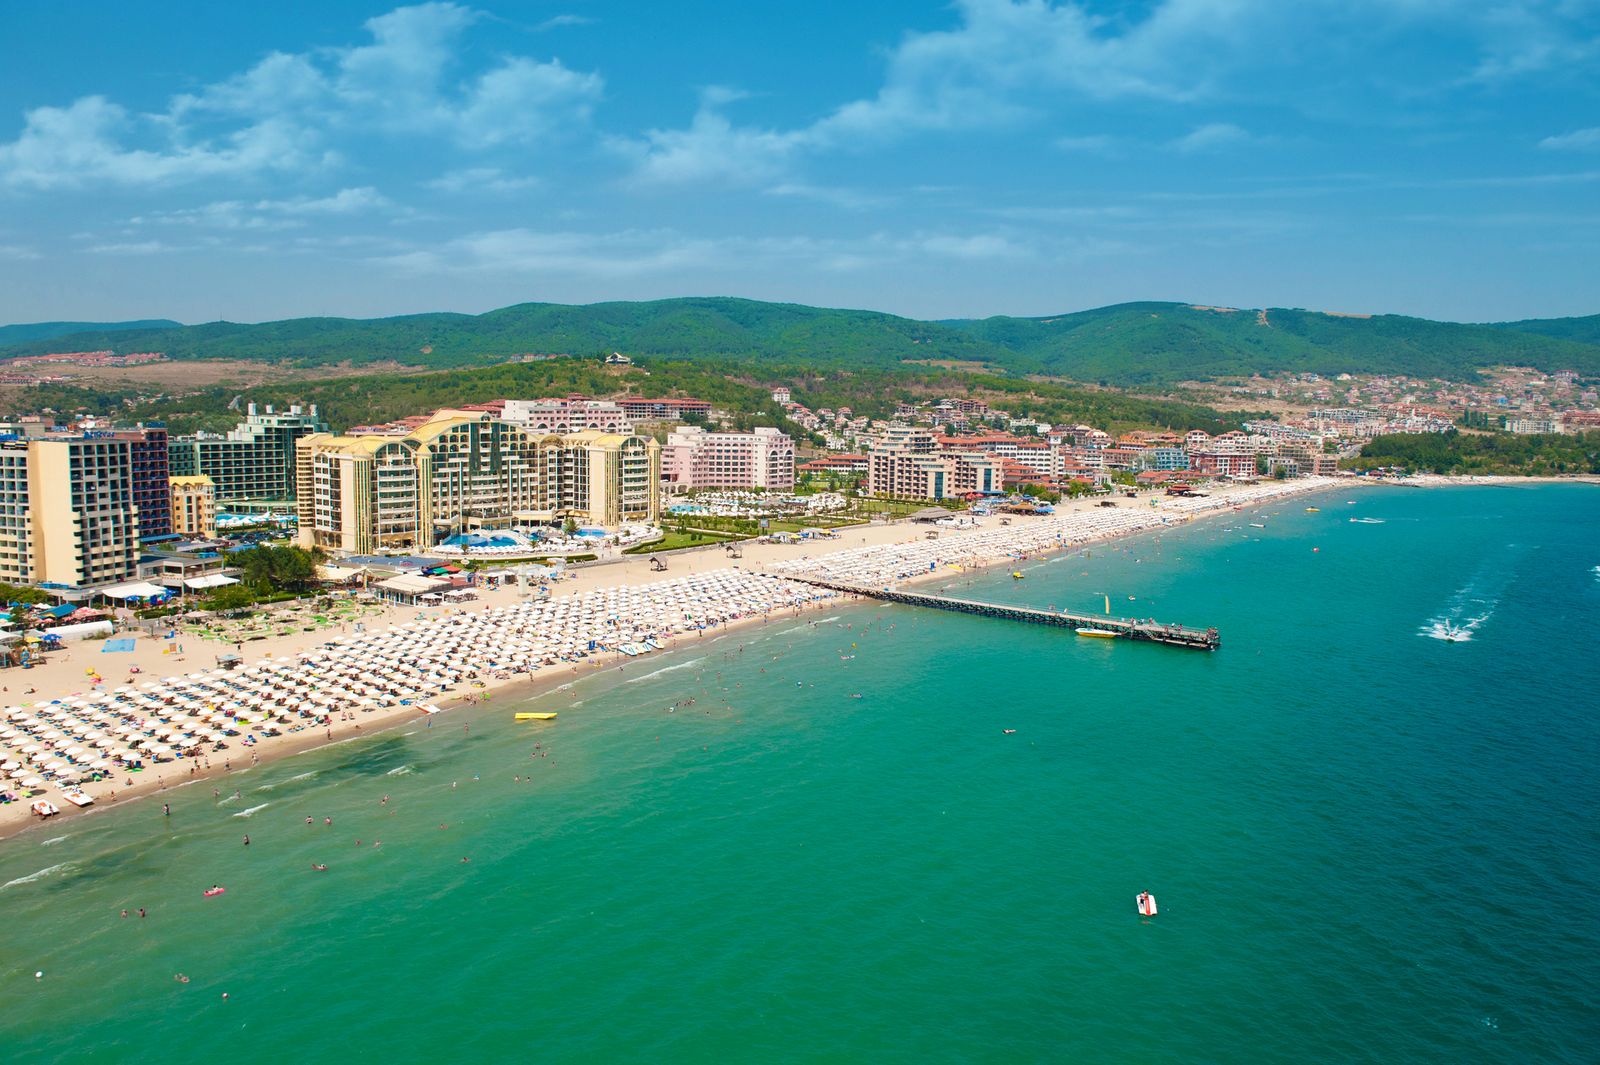 Bulgaria vrea o super vara. Ce ne asteapta la bulgari? Plaje Bulgaria